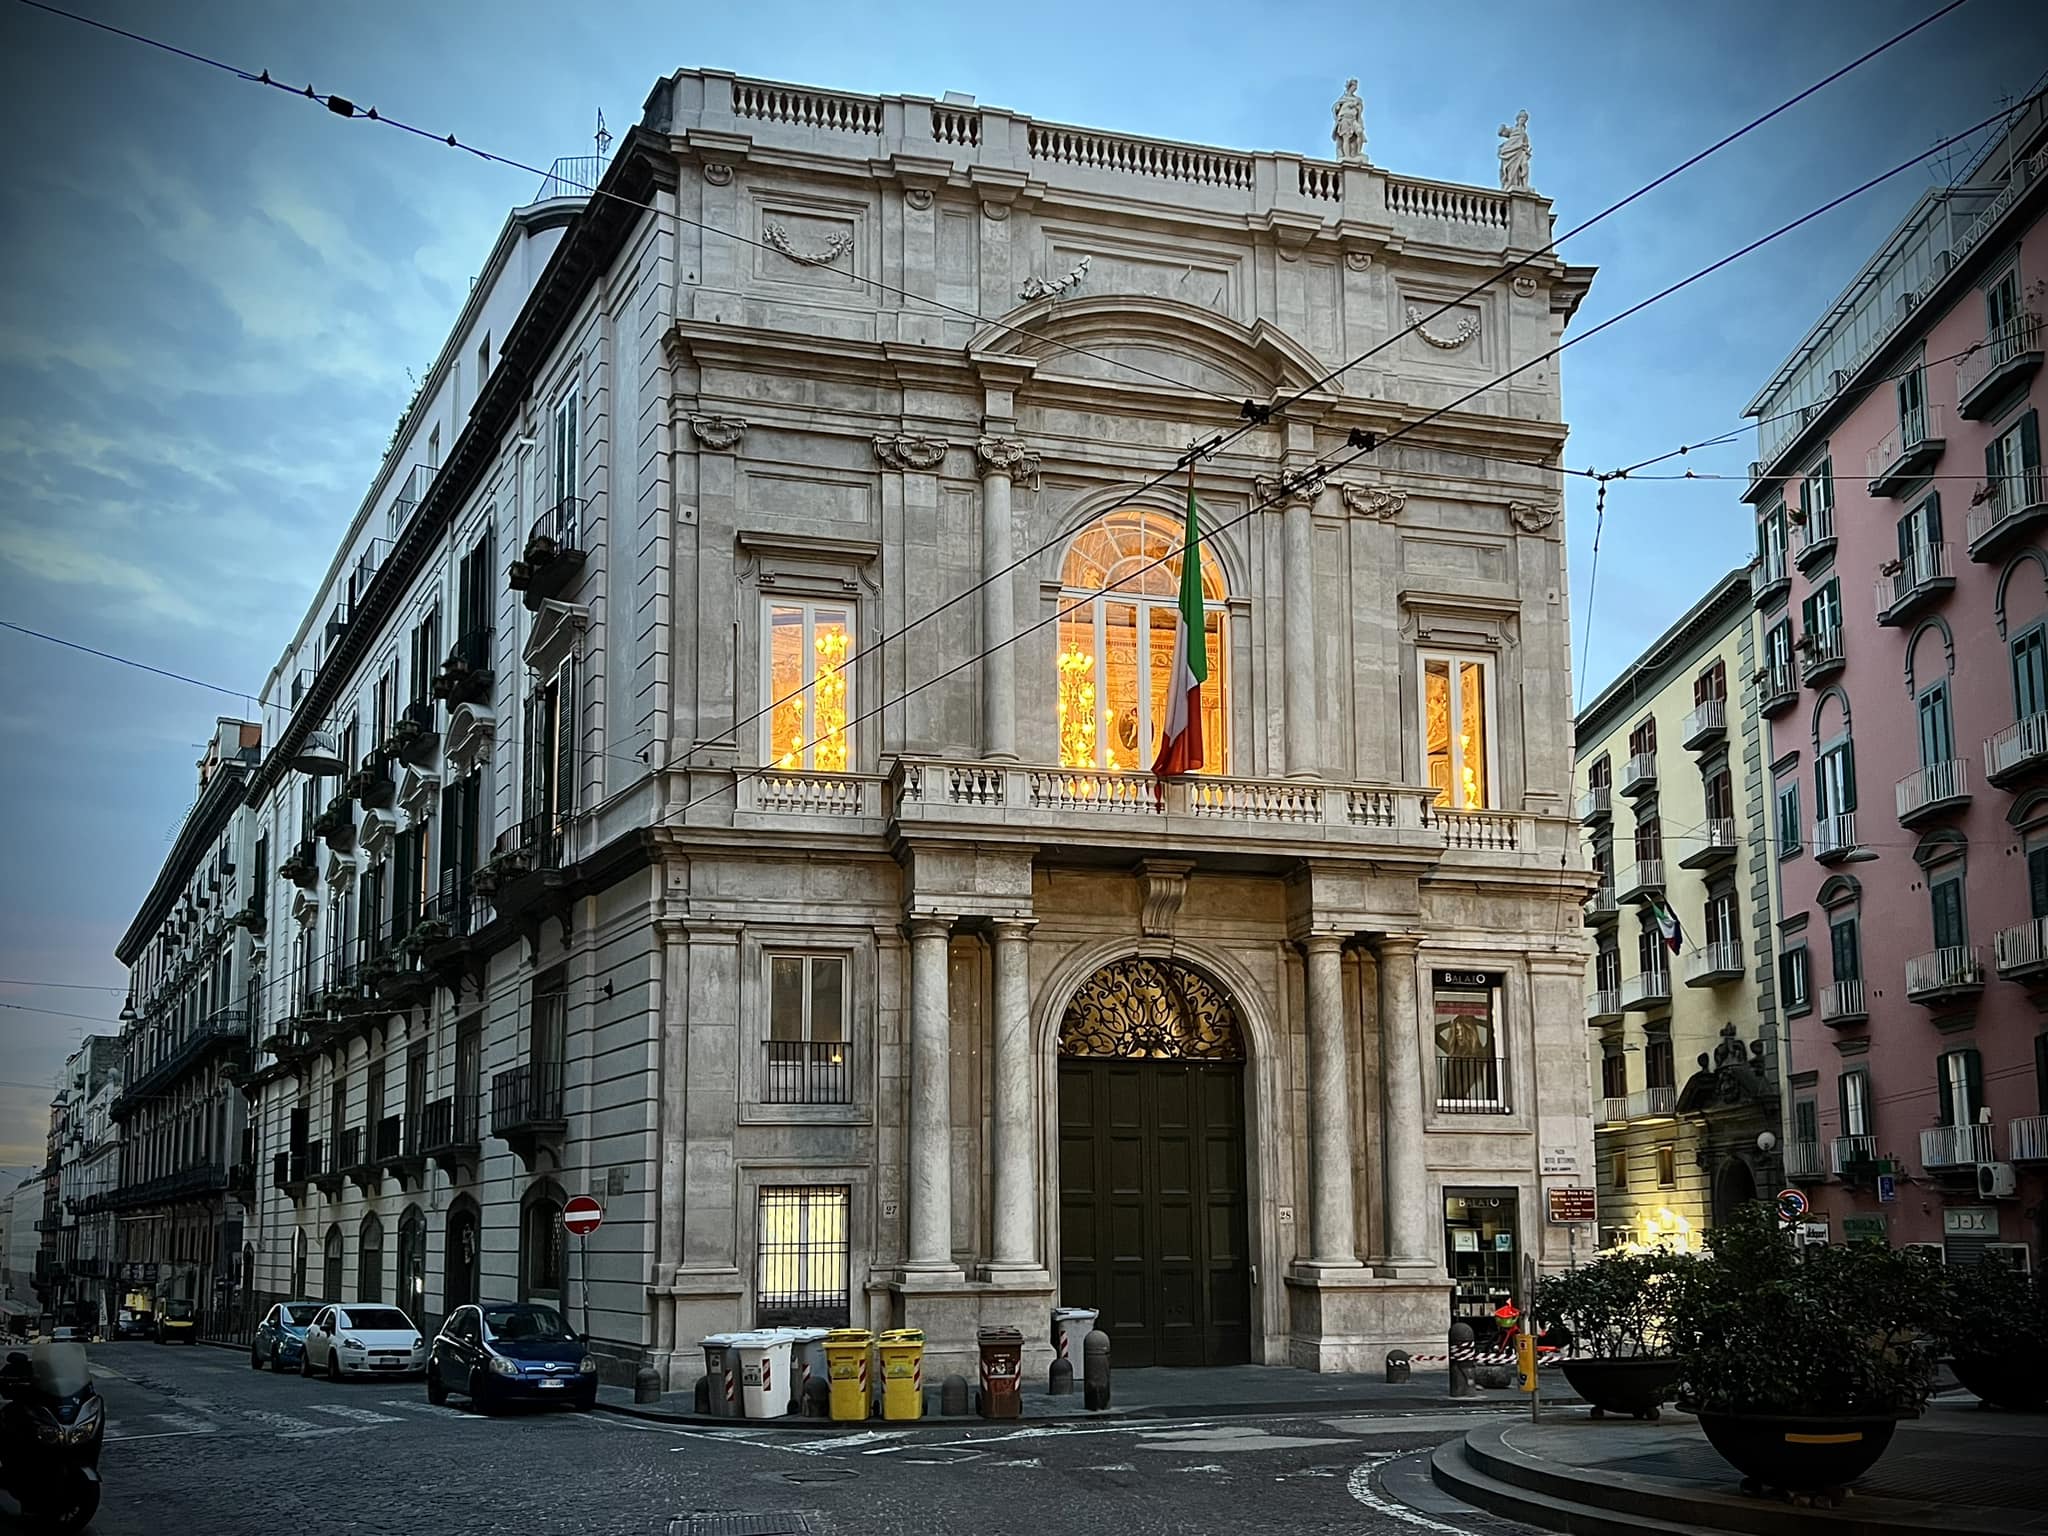 Enzo Rippa, Il Palazzo Doria d'Angri dopo i lavori di restauro del 2022, 2022, fotografia digitale